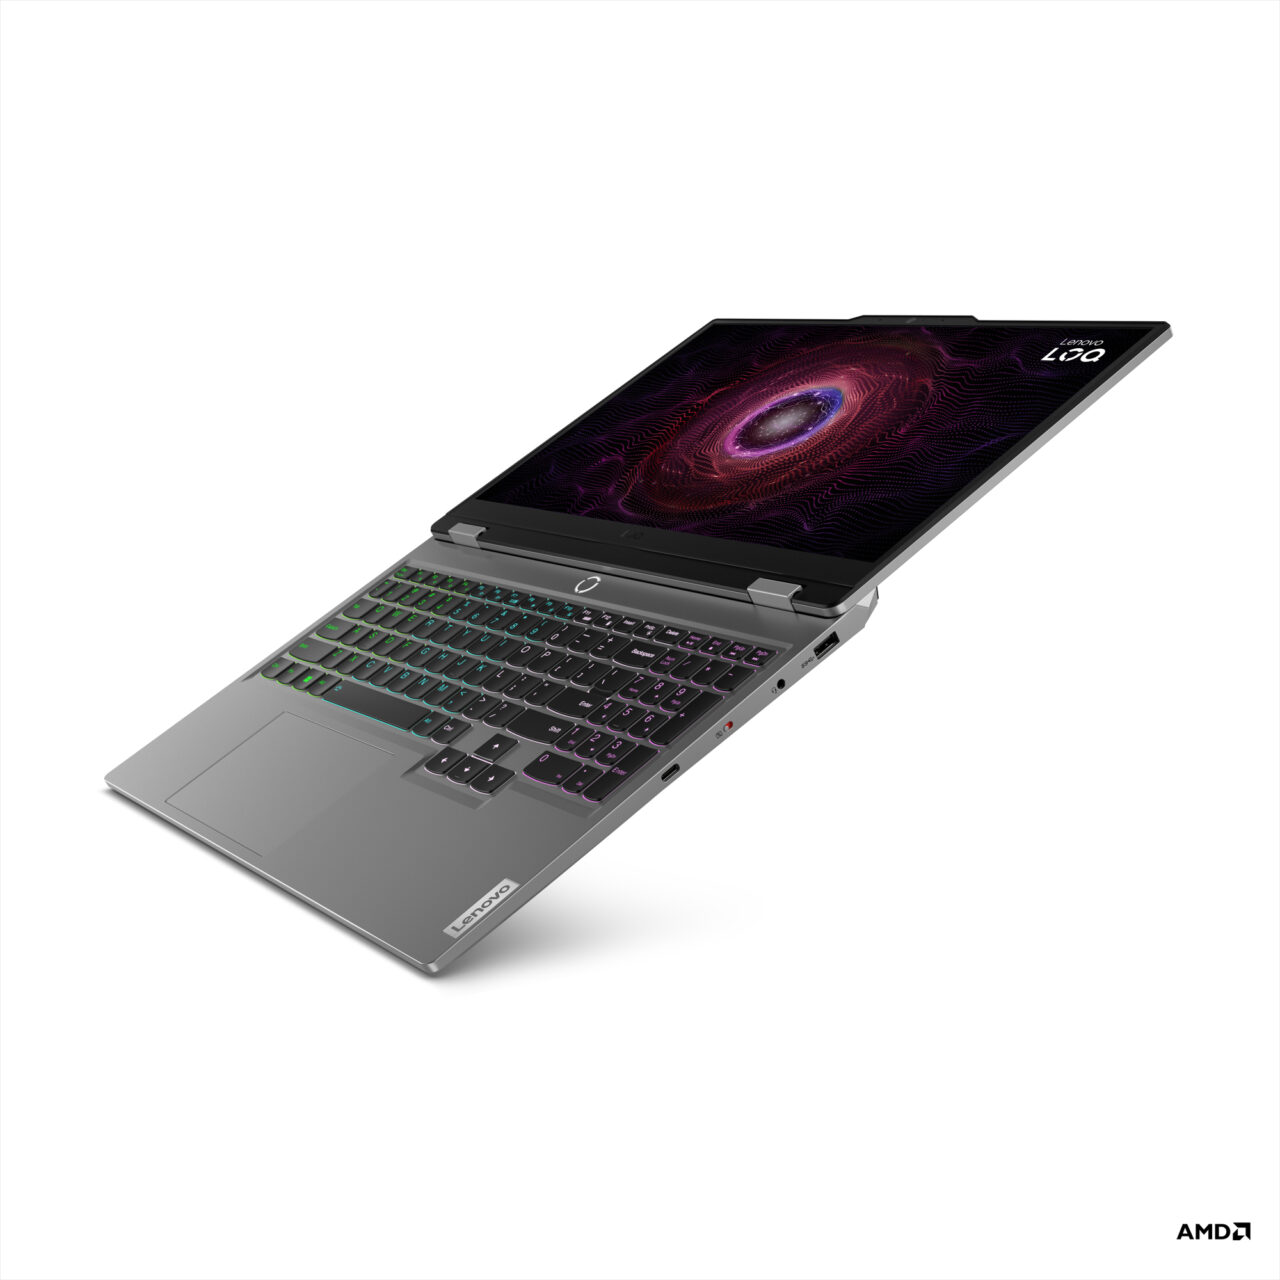 Laptop gamingowy umieszczony po przekątnej z podświetlaną klawiaturą RGB i grafiką z okiem na ekranie, logo AMD w narożniku.